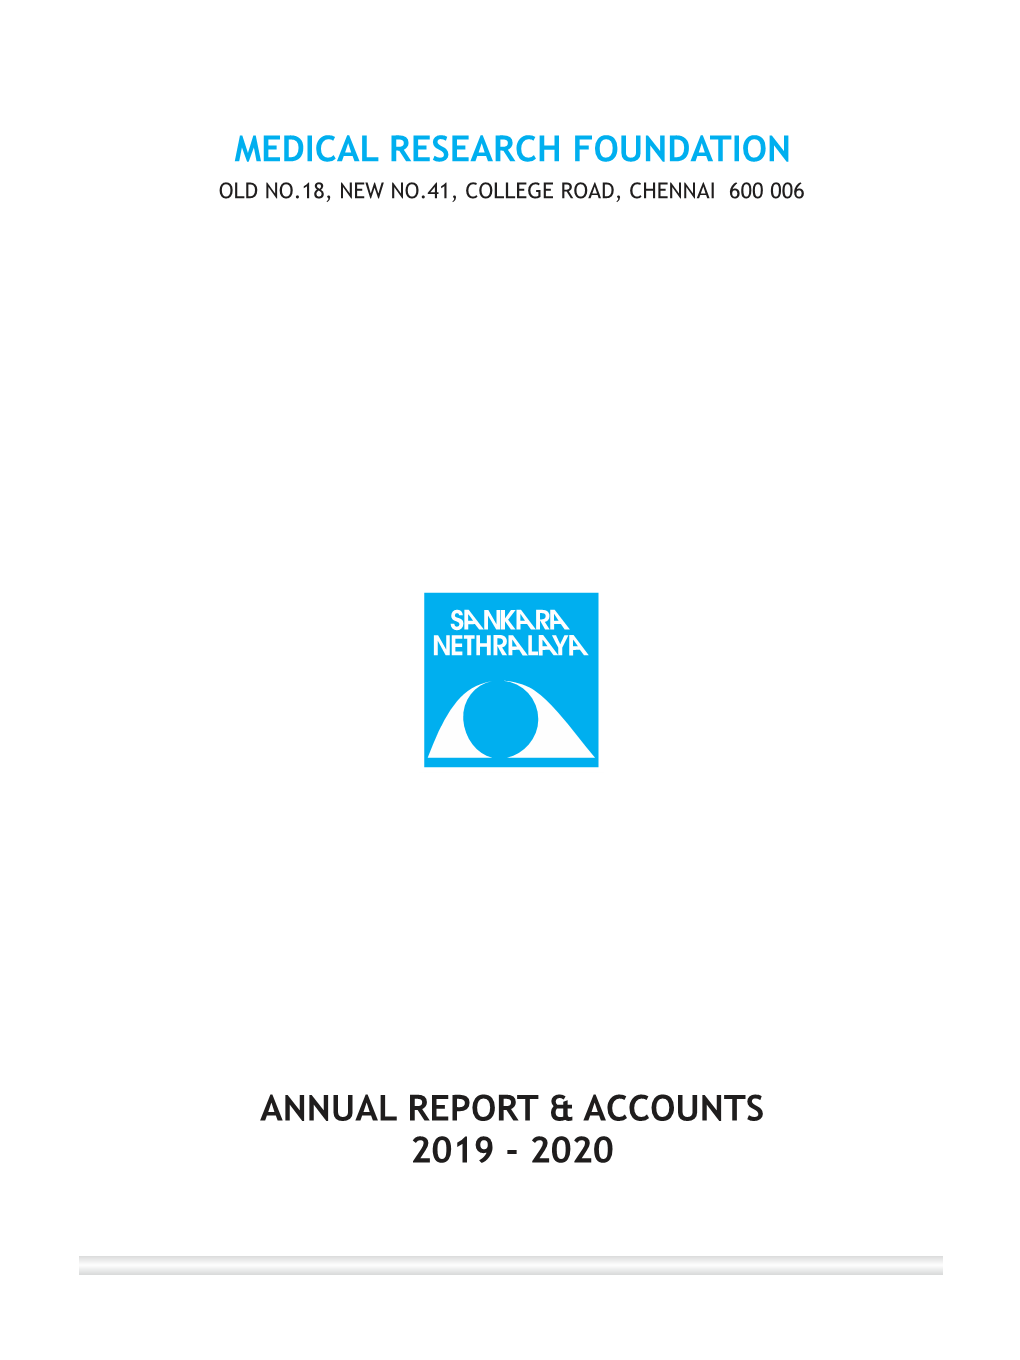 MRF-Annual Report-2019-2020-28 Dec 2020-10-2-2021.Cdr